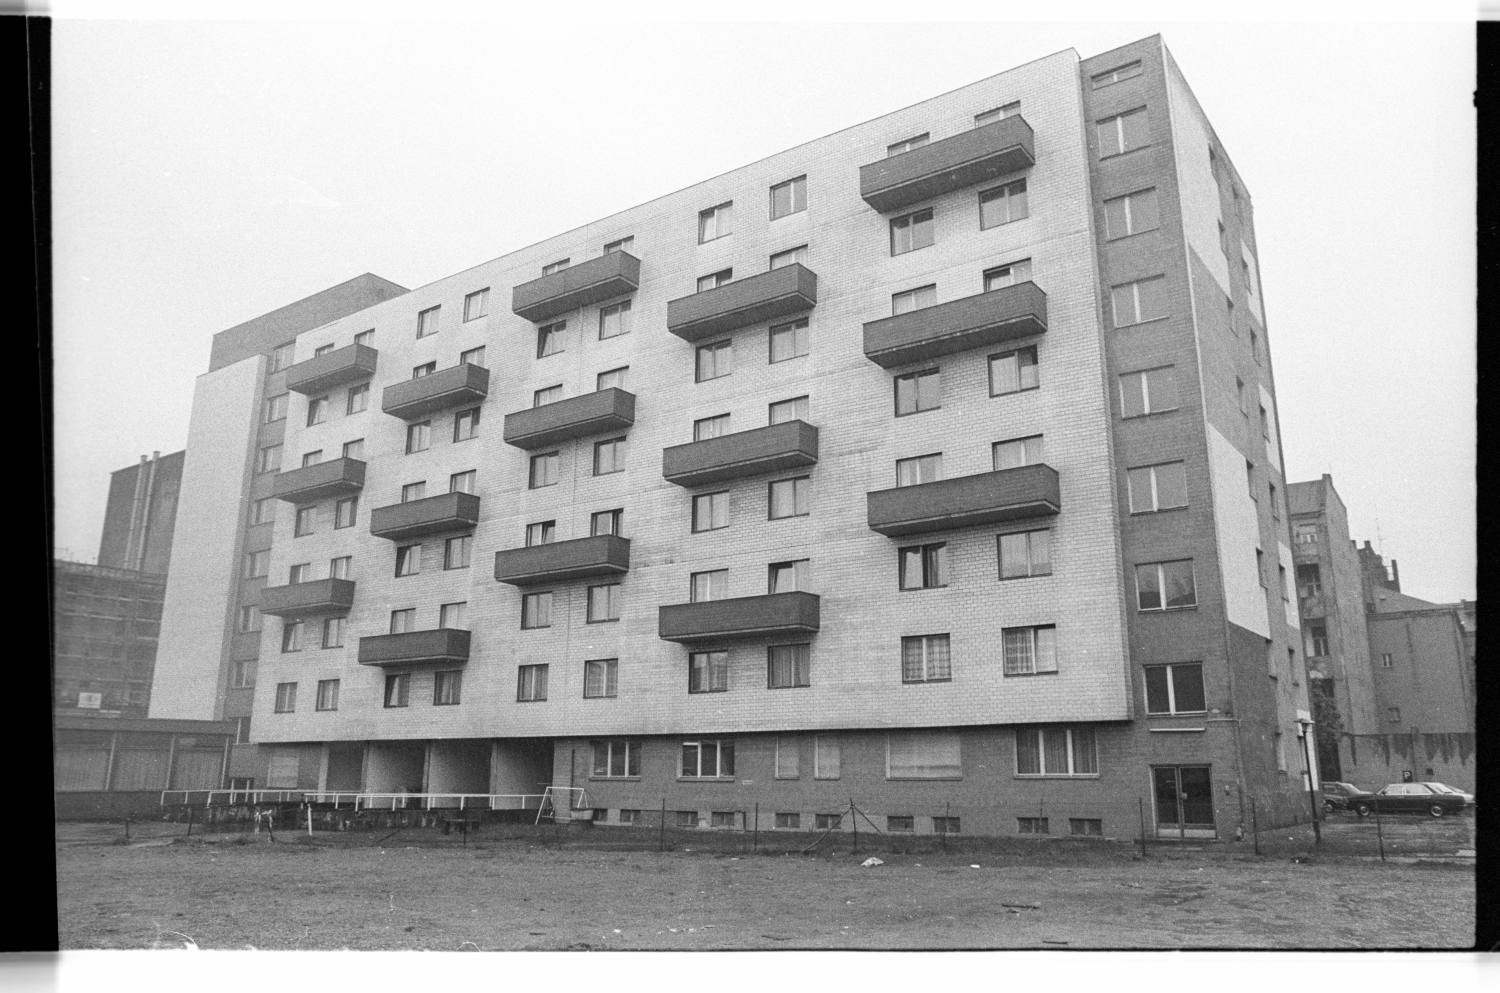 Kleinbildnegative: Mietshaus und Seniorenheim, Bülowstraße, 1982 (Museen Tempelhof-Schöneberg/Jürgen Henschel RR-F)